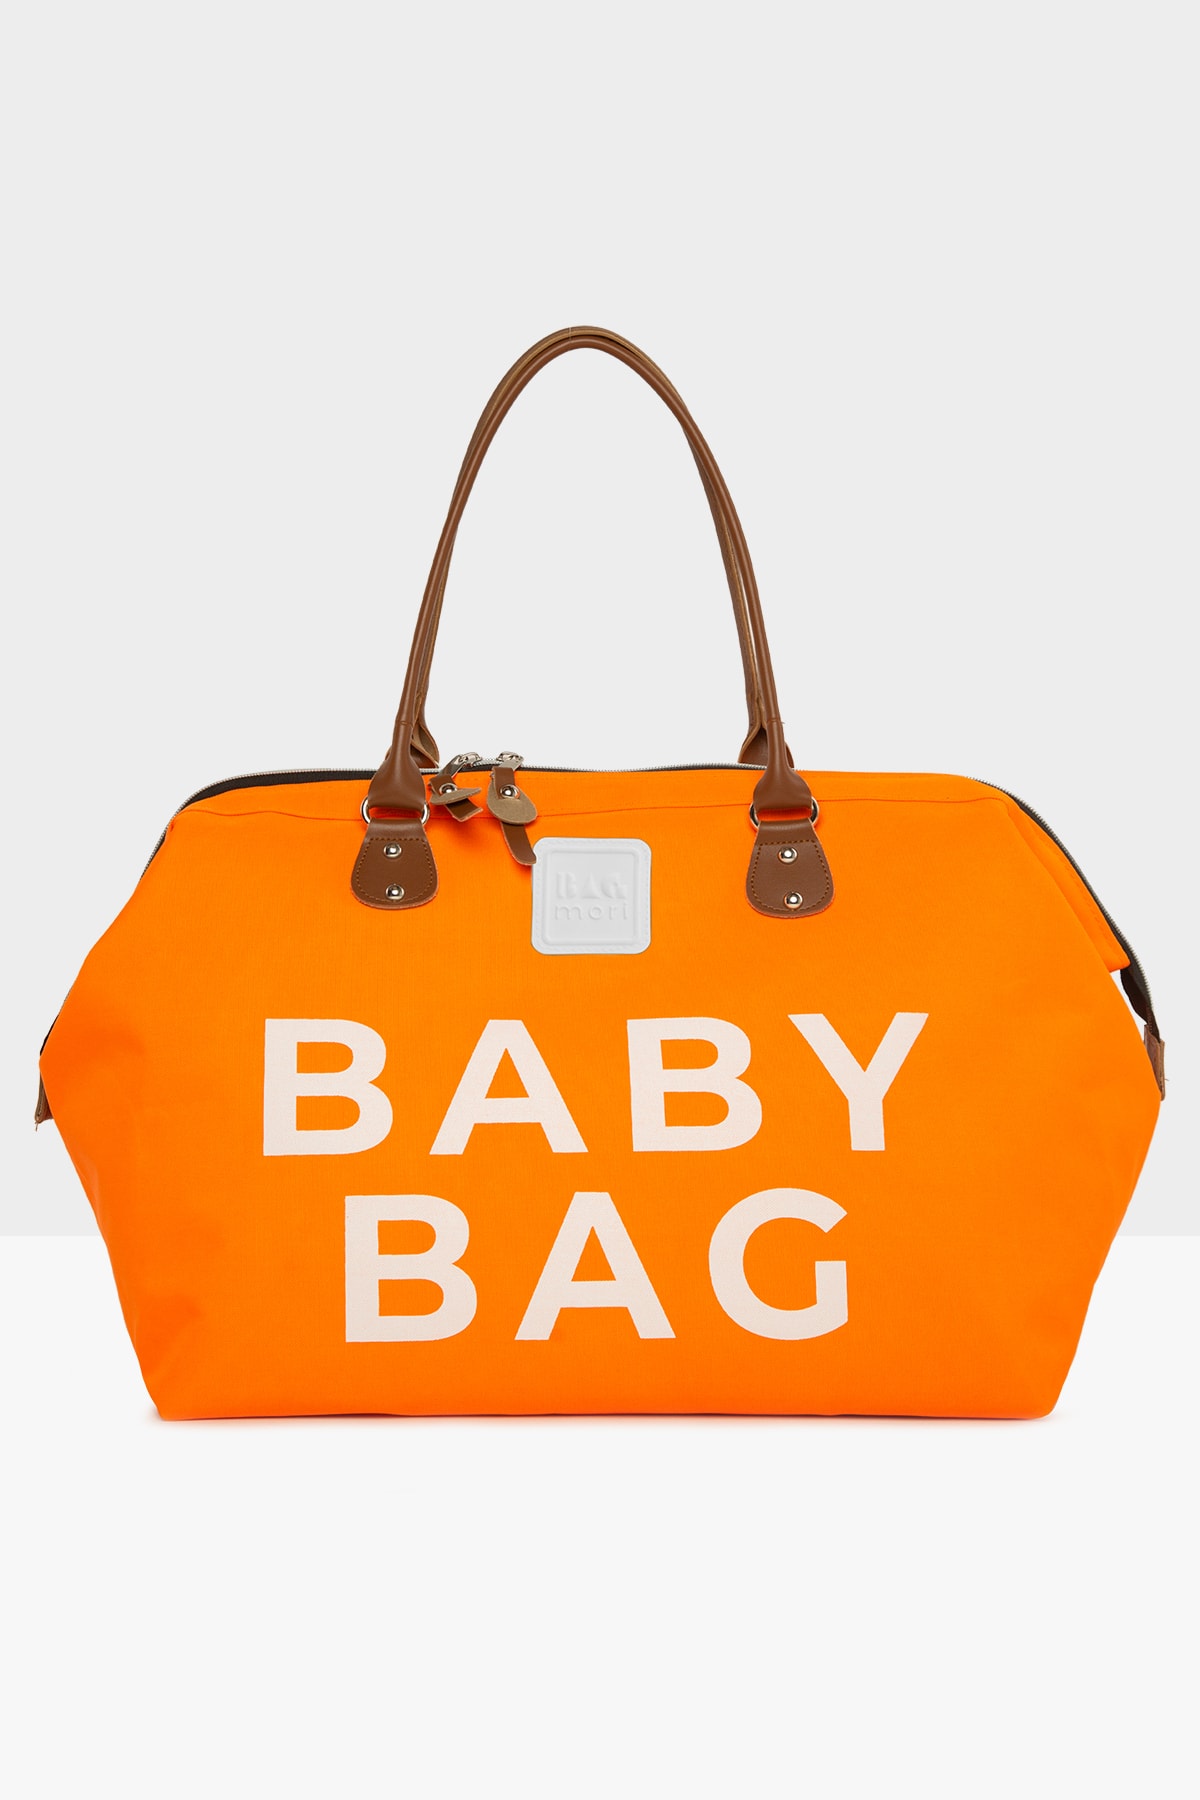 Bagmori Turuncu Baby Bag Baskılı Bebek Bakım Çantası M000002169